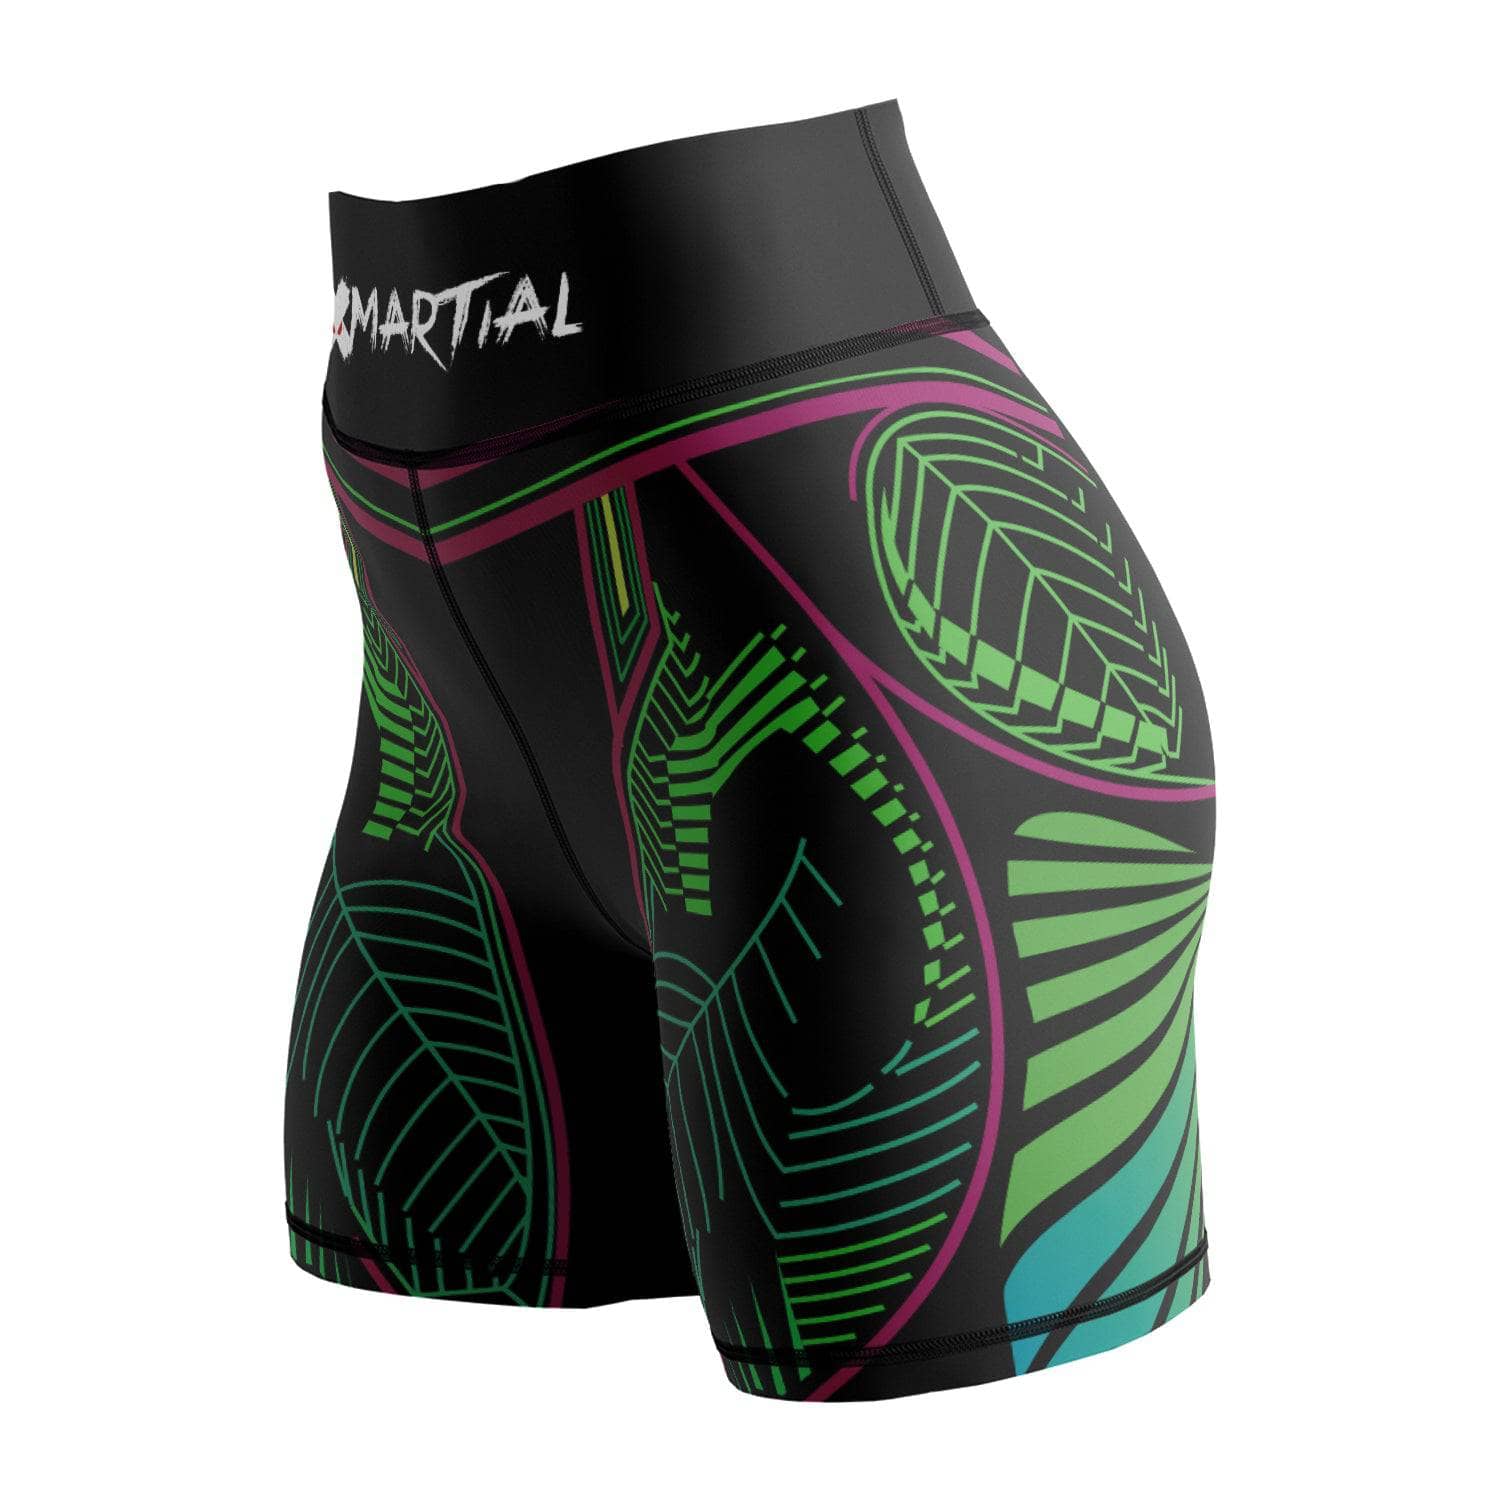 Aztec Women's BJJ/MMA Compression Shorts - XMARTIAL